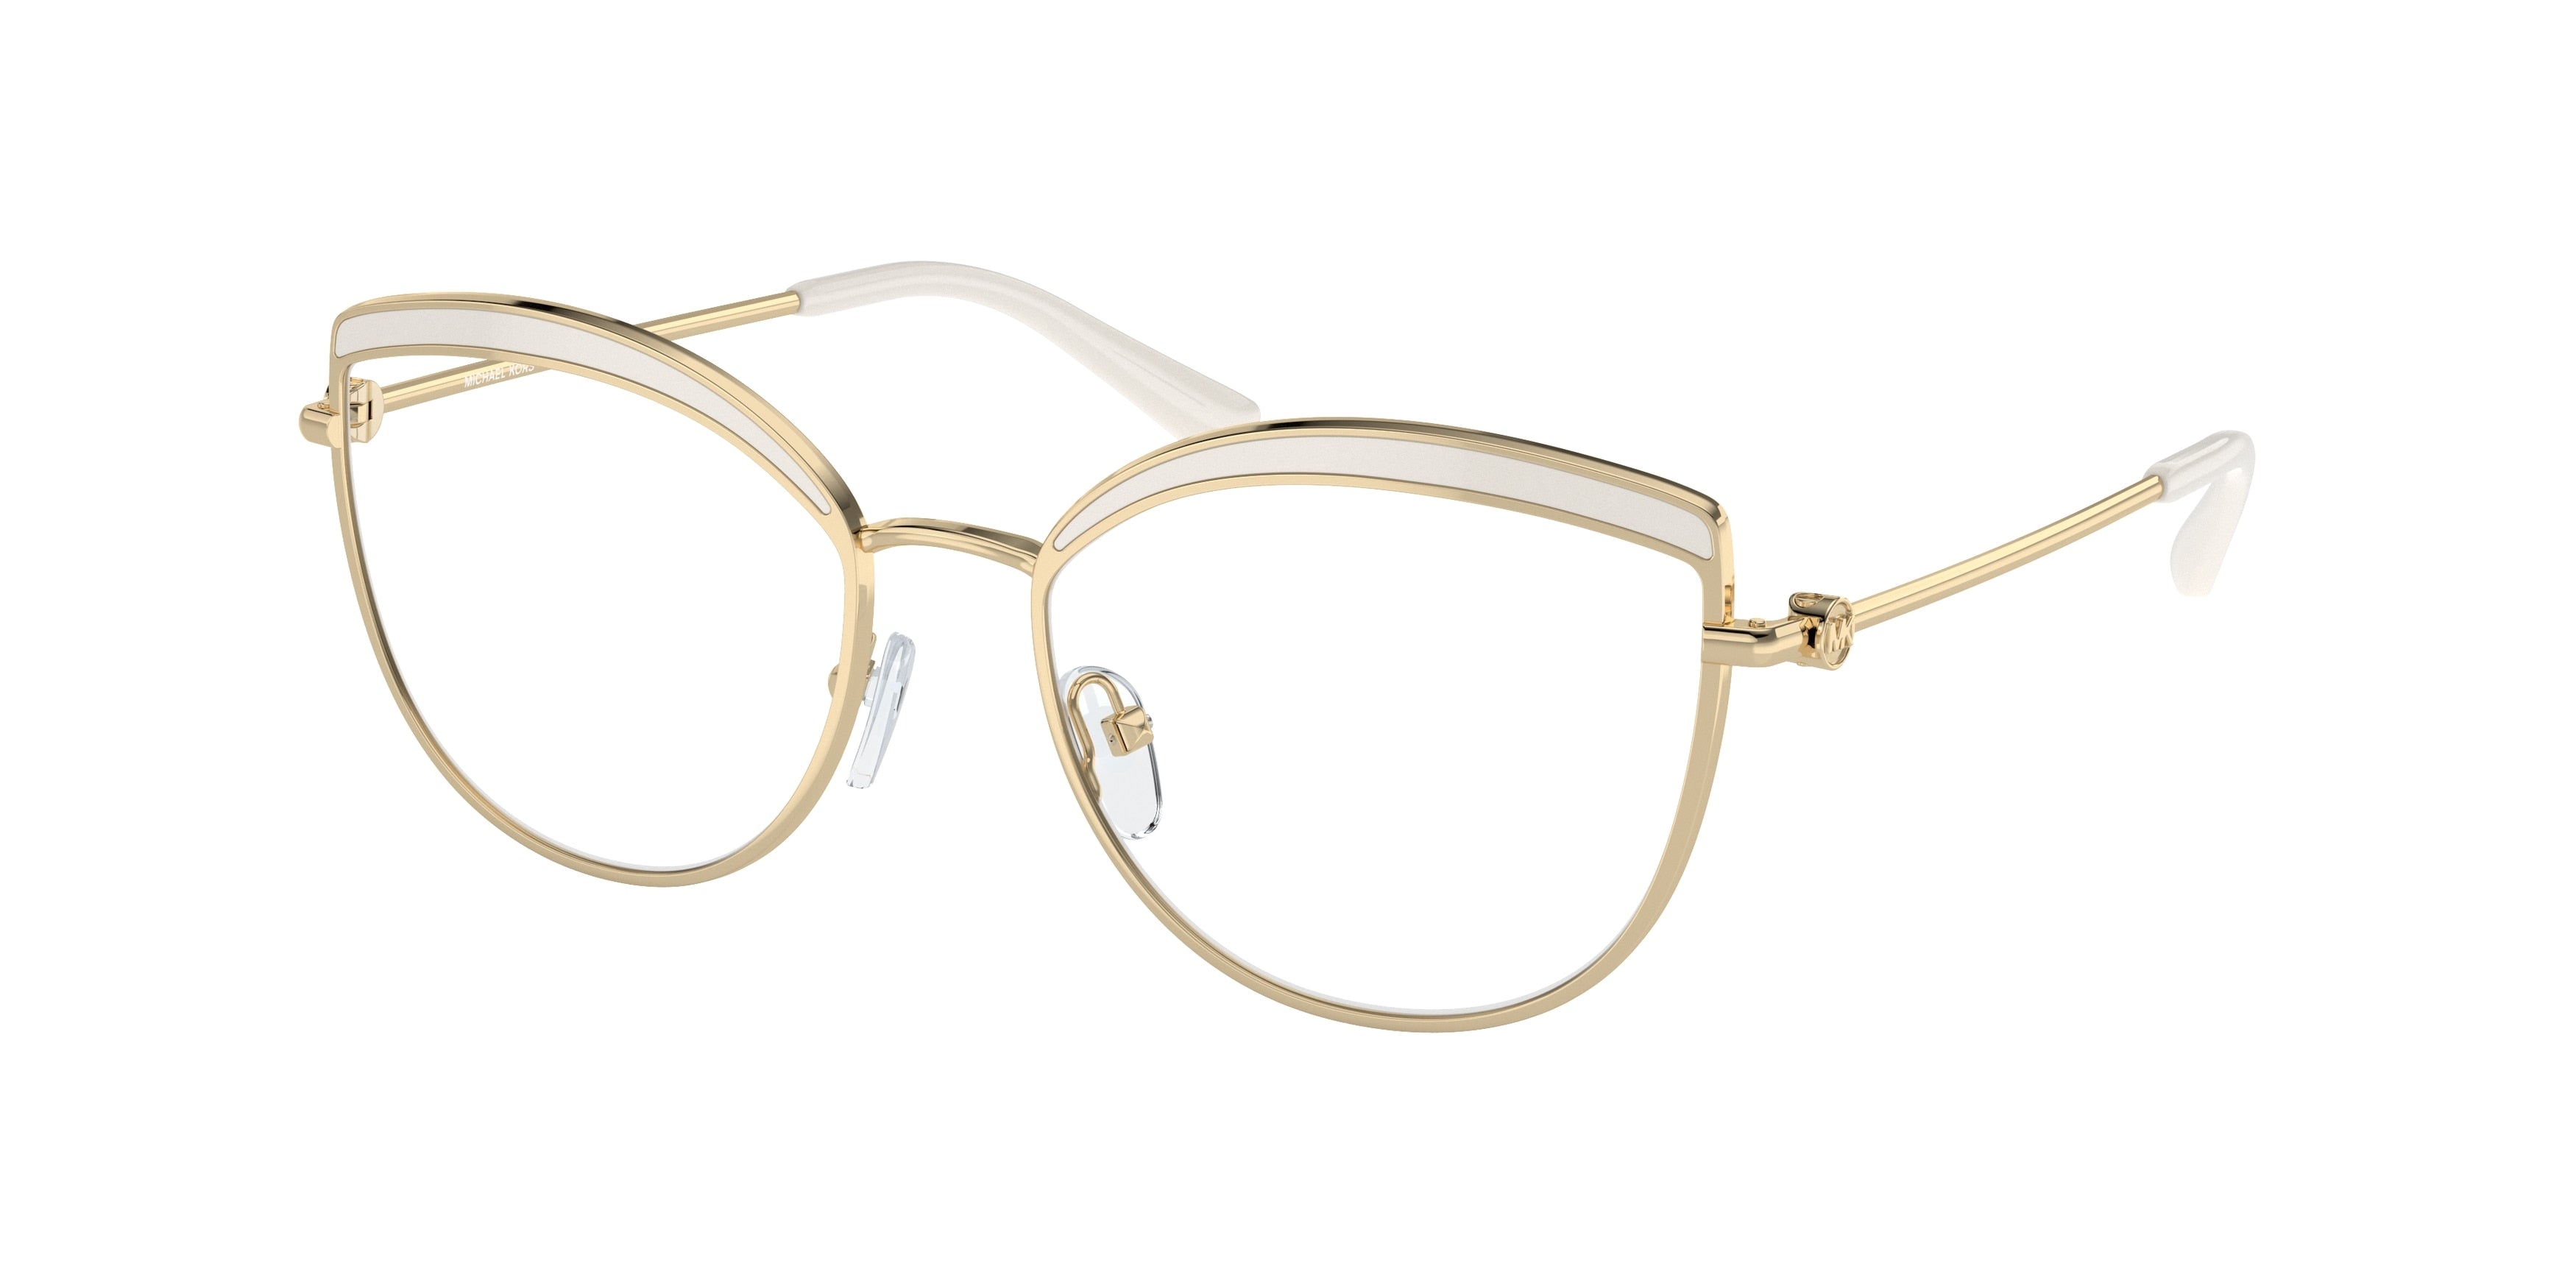 Michael Kors NAPIER MK3072 Cat Eye Eyeglasses  1017-Light Gold 54-140-17 - Color Map Gold